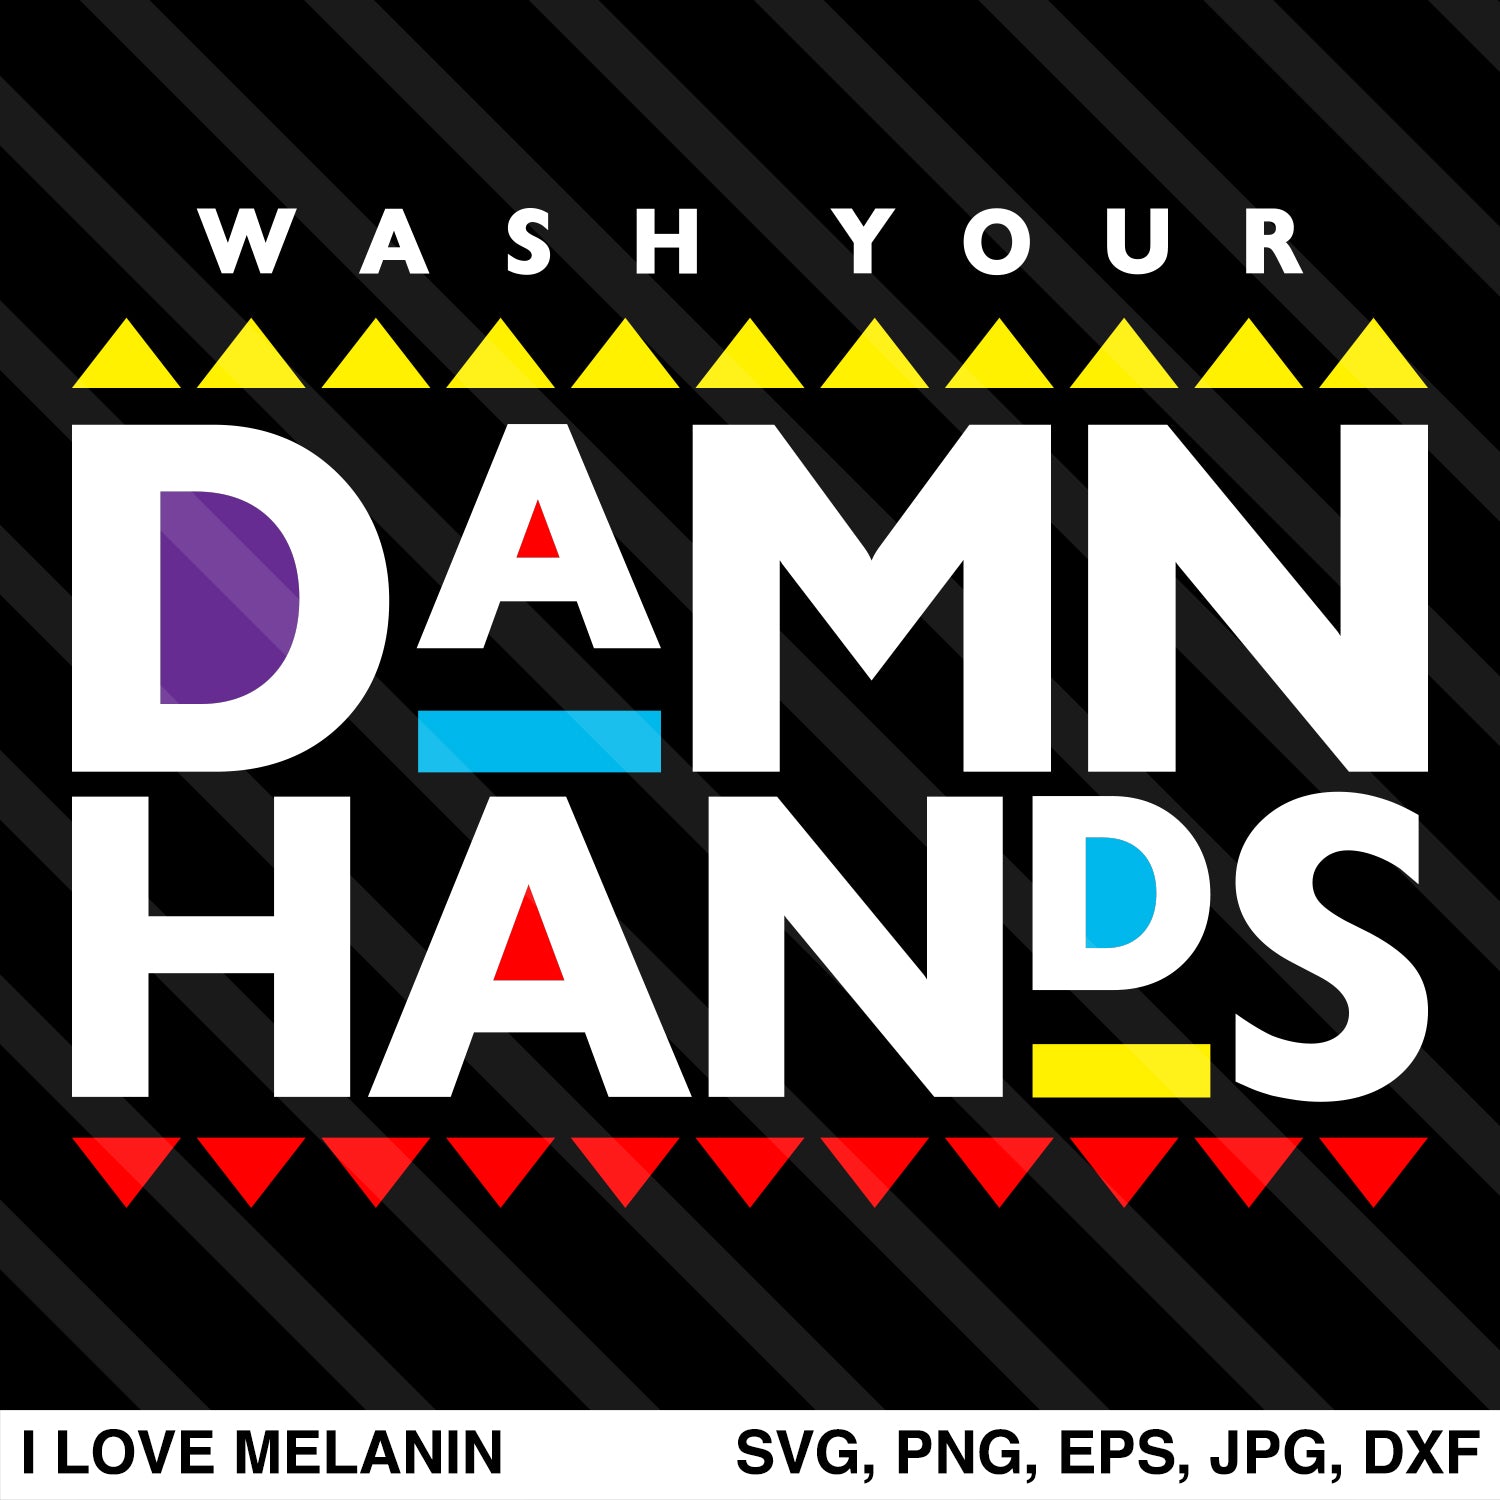 Download Wash Your Damn Hands SVG - I Love Melanin